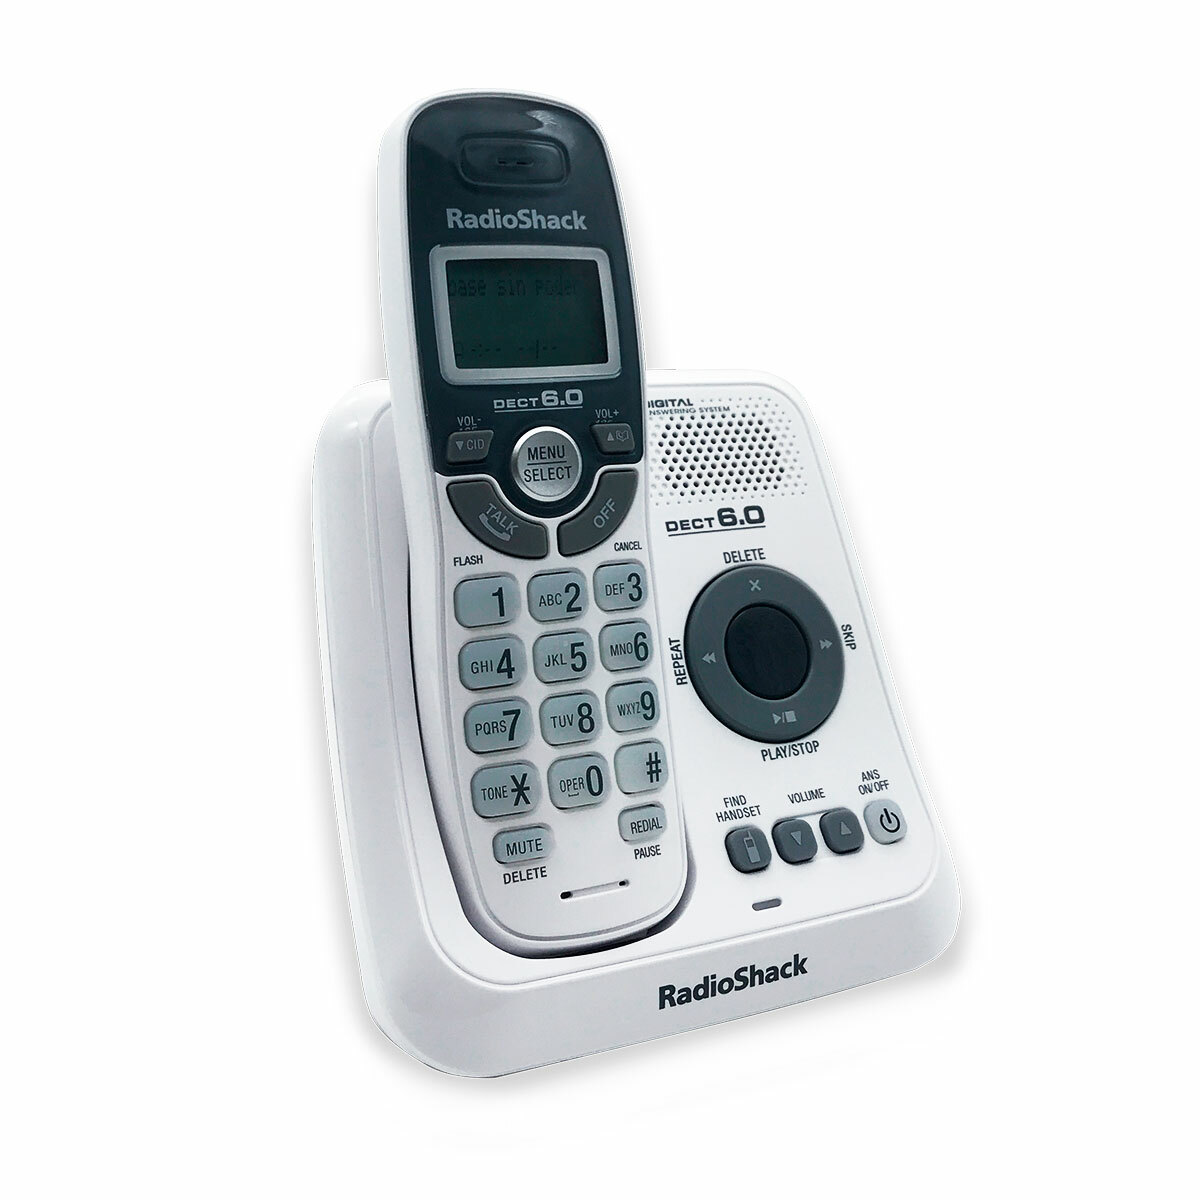 Teléfono Inalámbrico con Identificador RadioShack RS6114 / Rojo, Teléfonos  inalámbricos, Teléfonos fijos, Telefonía Fija y Celulares, Todas, Categoría